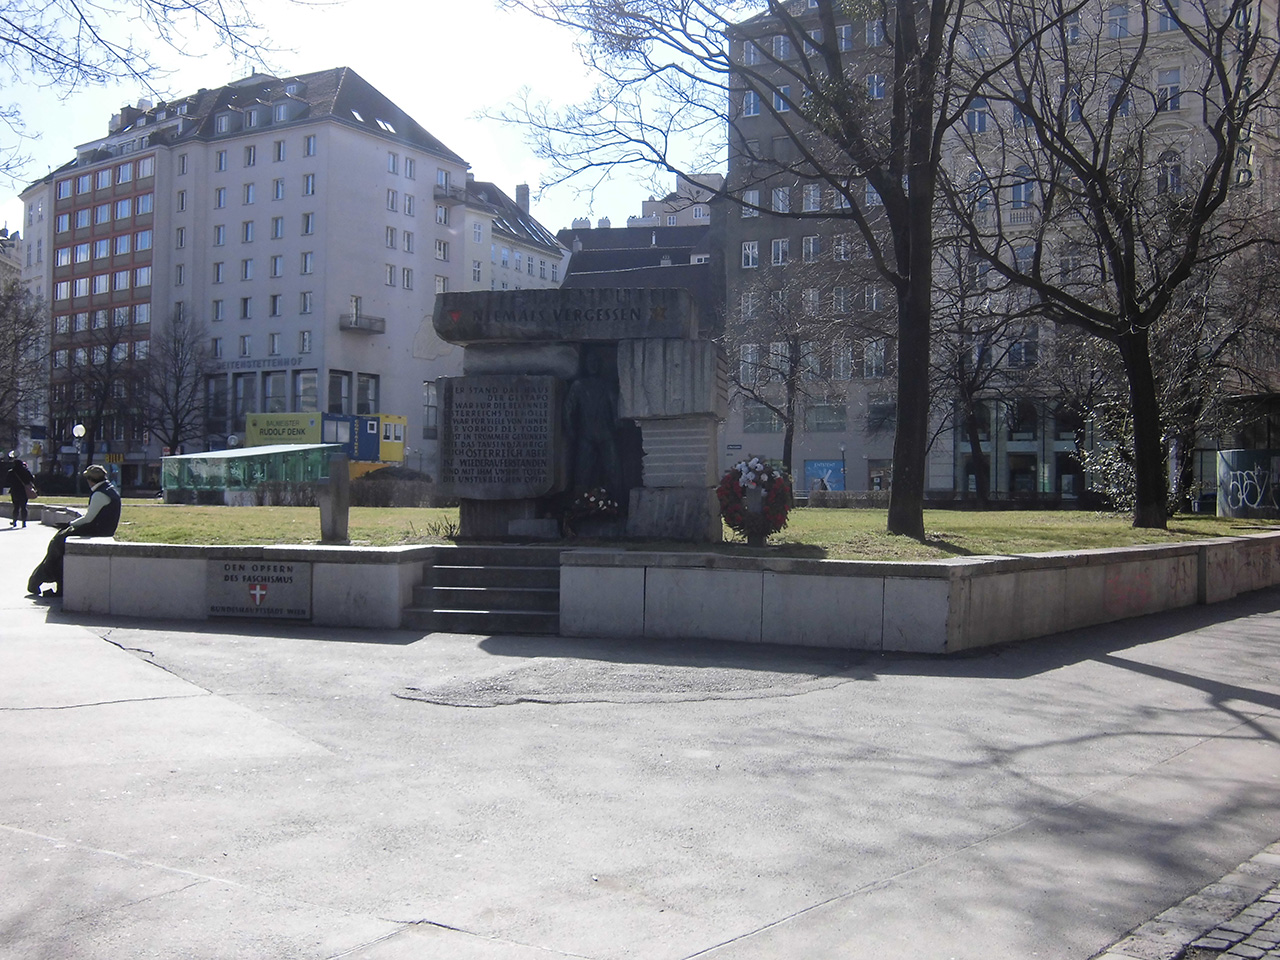 モルツィン広場の記念碑 - オーストリアSV2014